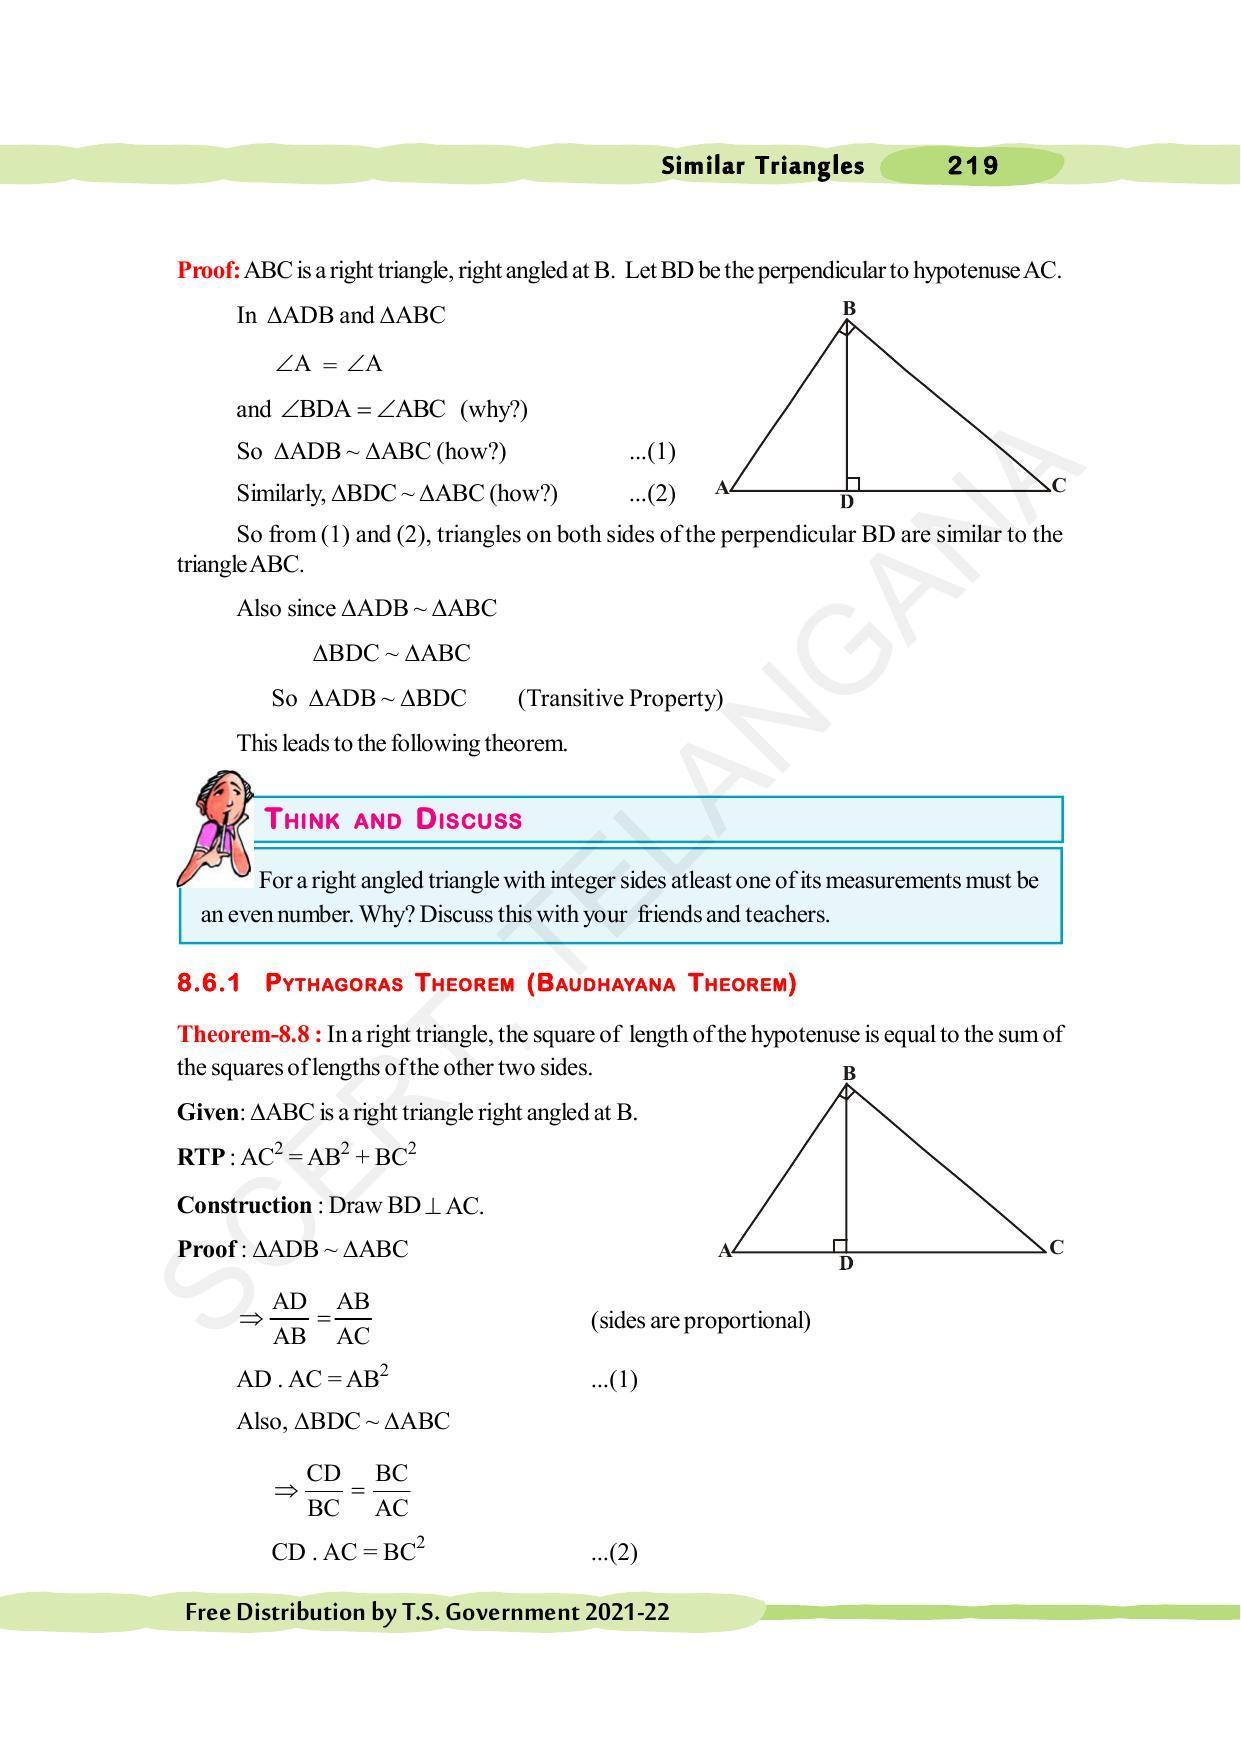 TS SCERT Class 10 Maths (English Medium) Text Book - Page 229